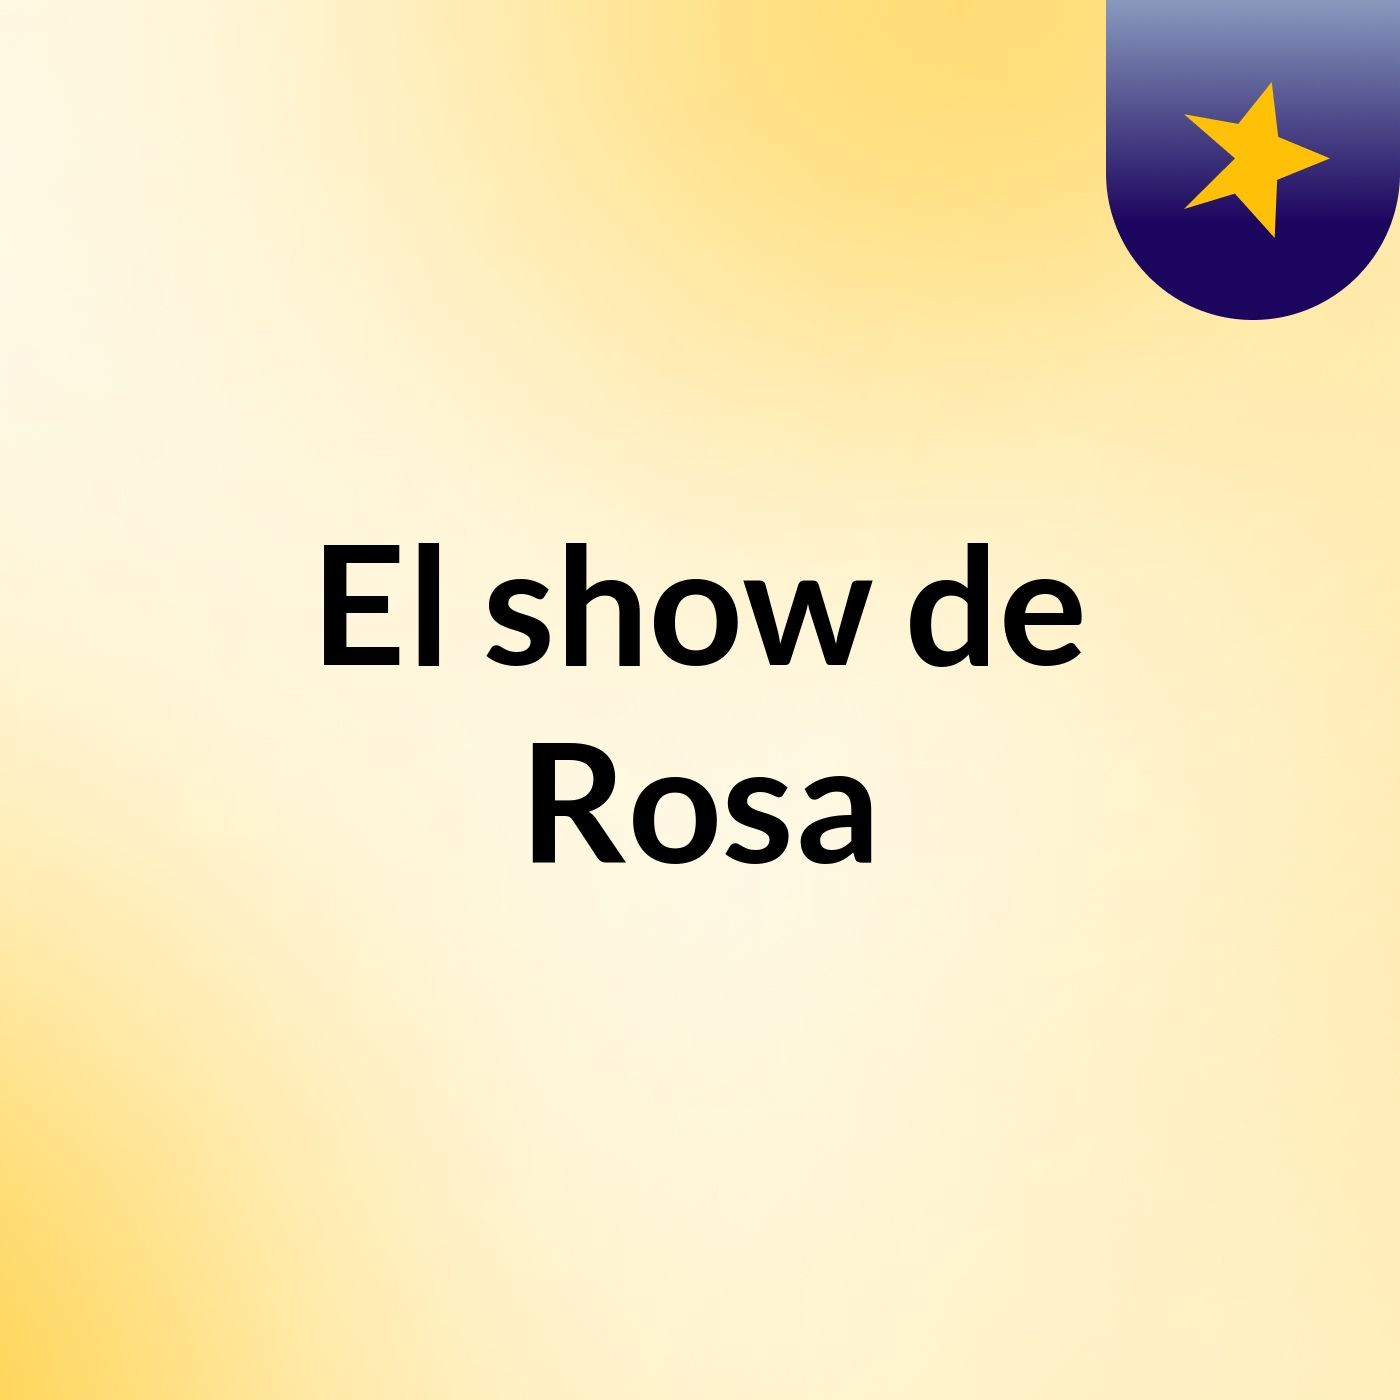 El show de Rosa